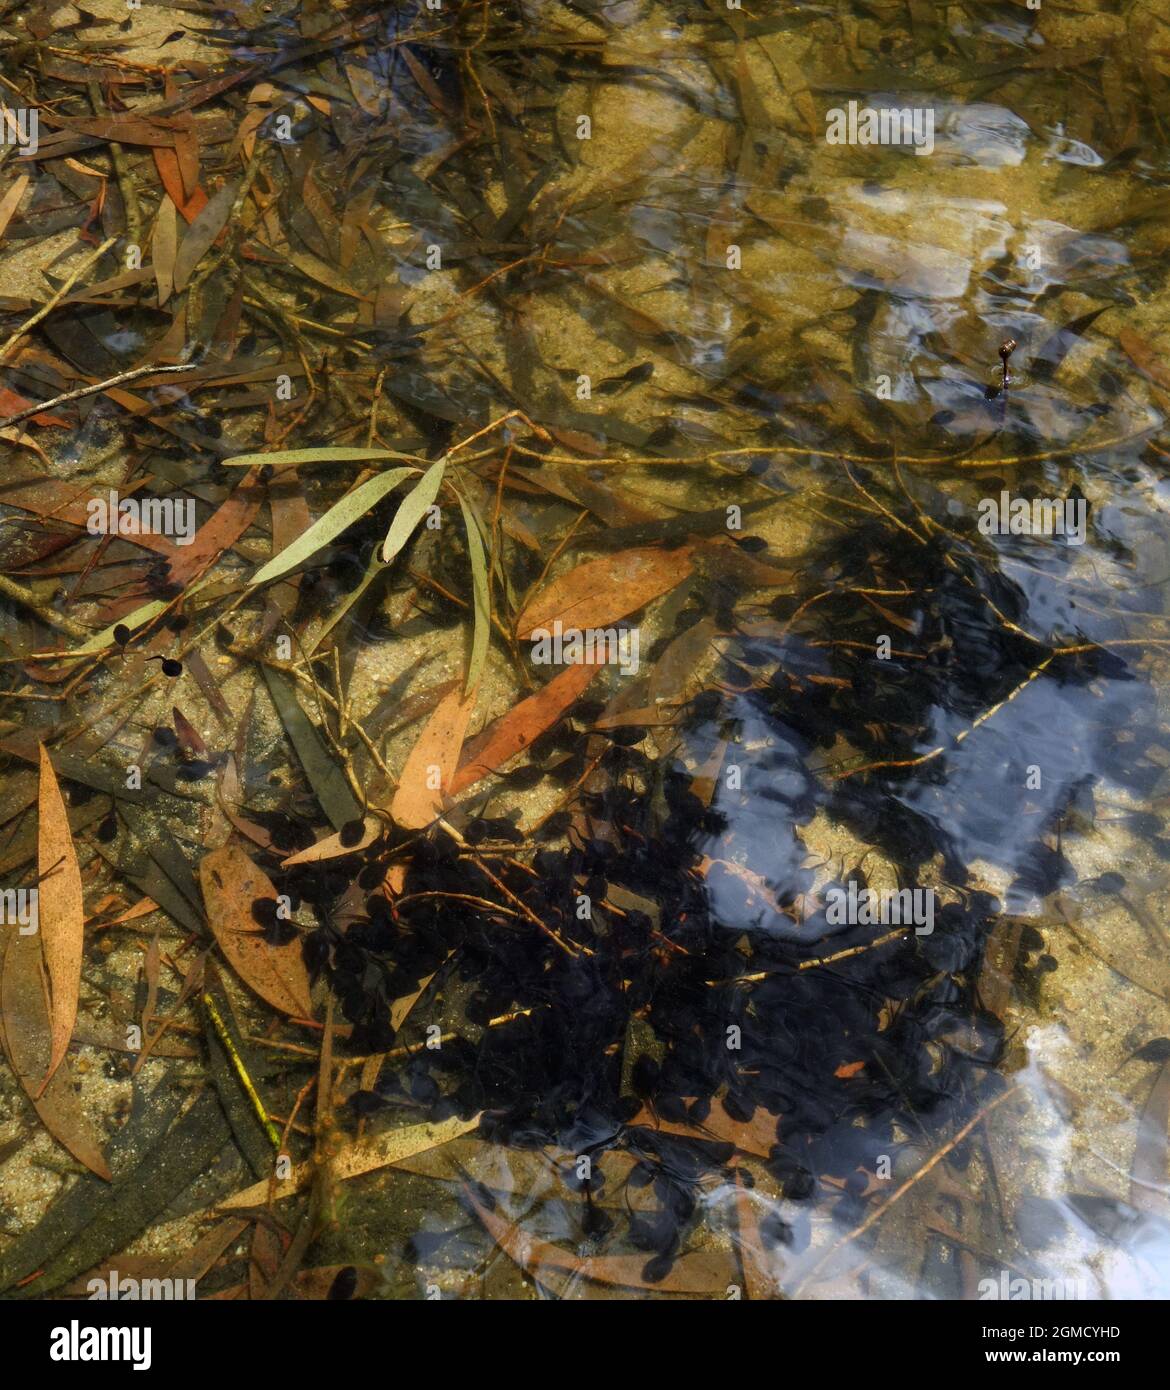 Agrégation de têtards toxiques envahissants de canne à sucre (Rhinella marinus), Parc national des Limmen de Butterfly Falls, territoire du Nord, Australie Banque D'Images